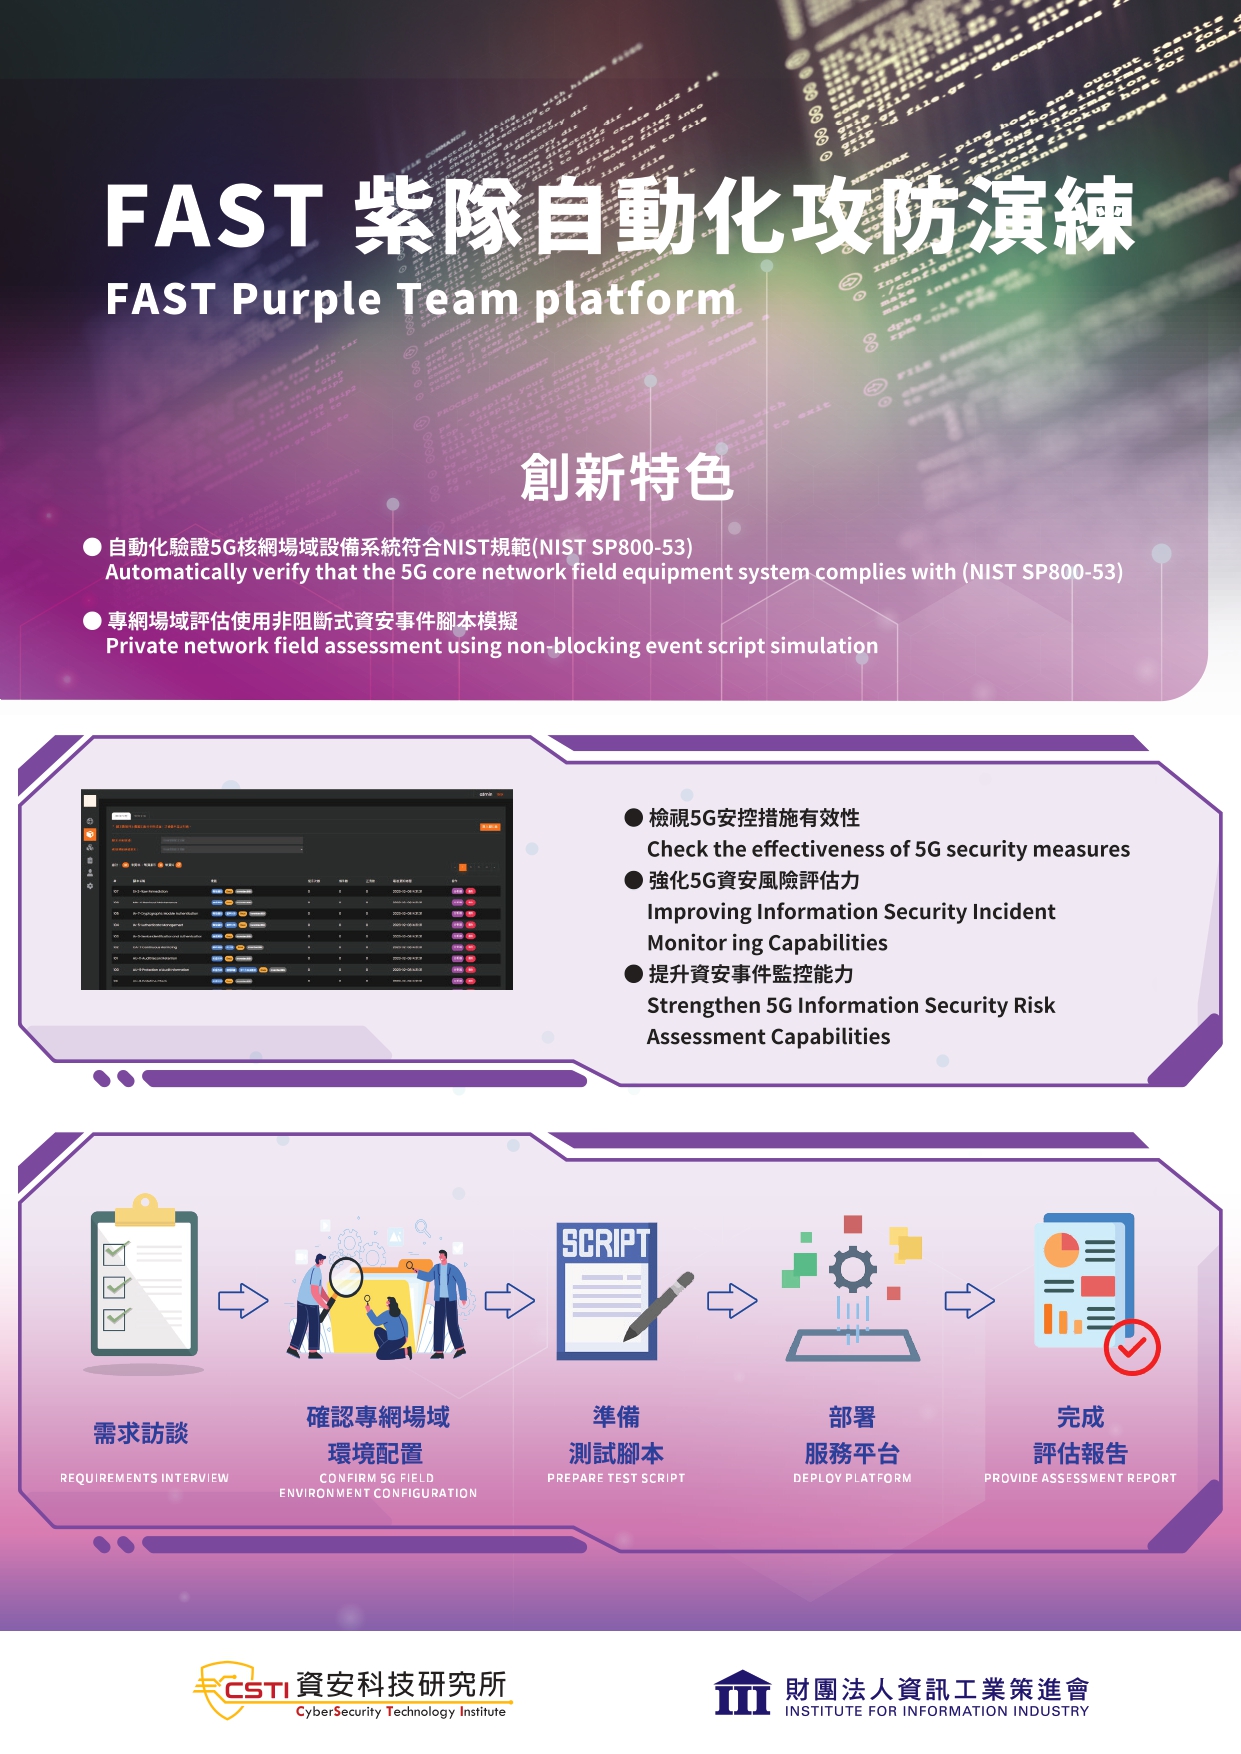 FAST  Purple Team Platform